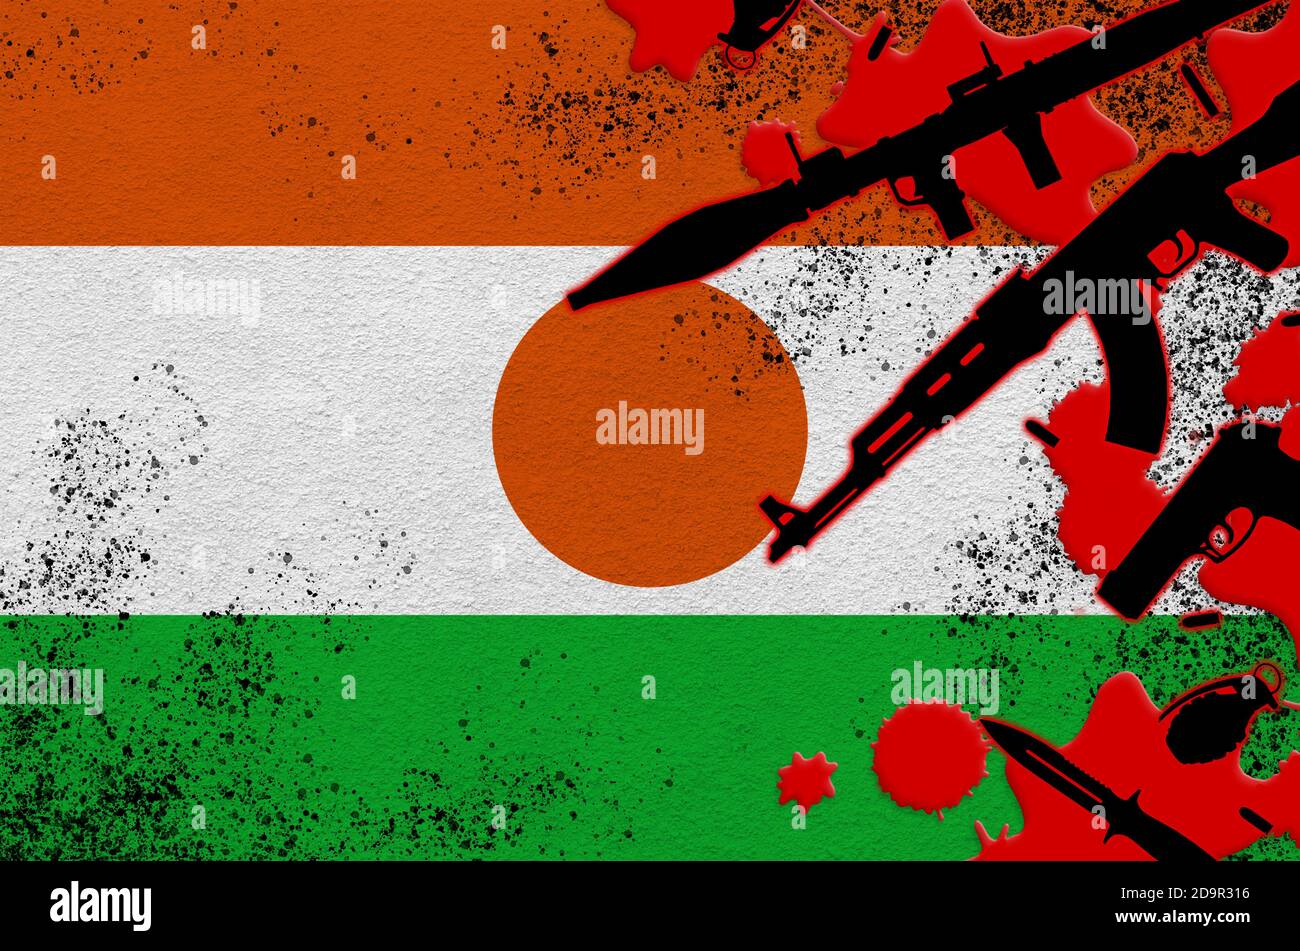 Drapeau du Niger et diverses armes dans le sang rouge. Concept d'attaque terroriste ou d'opérations militaires avec un résultat mortel. Trafic d'armes Banque D'Images